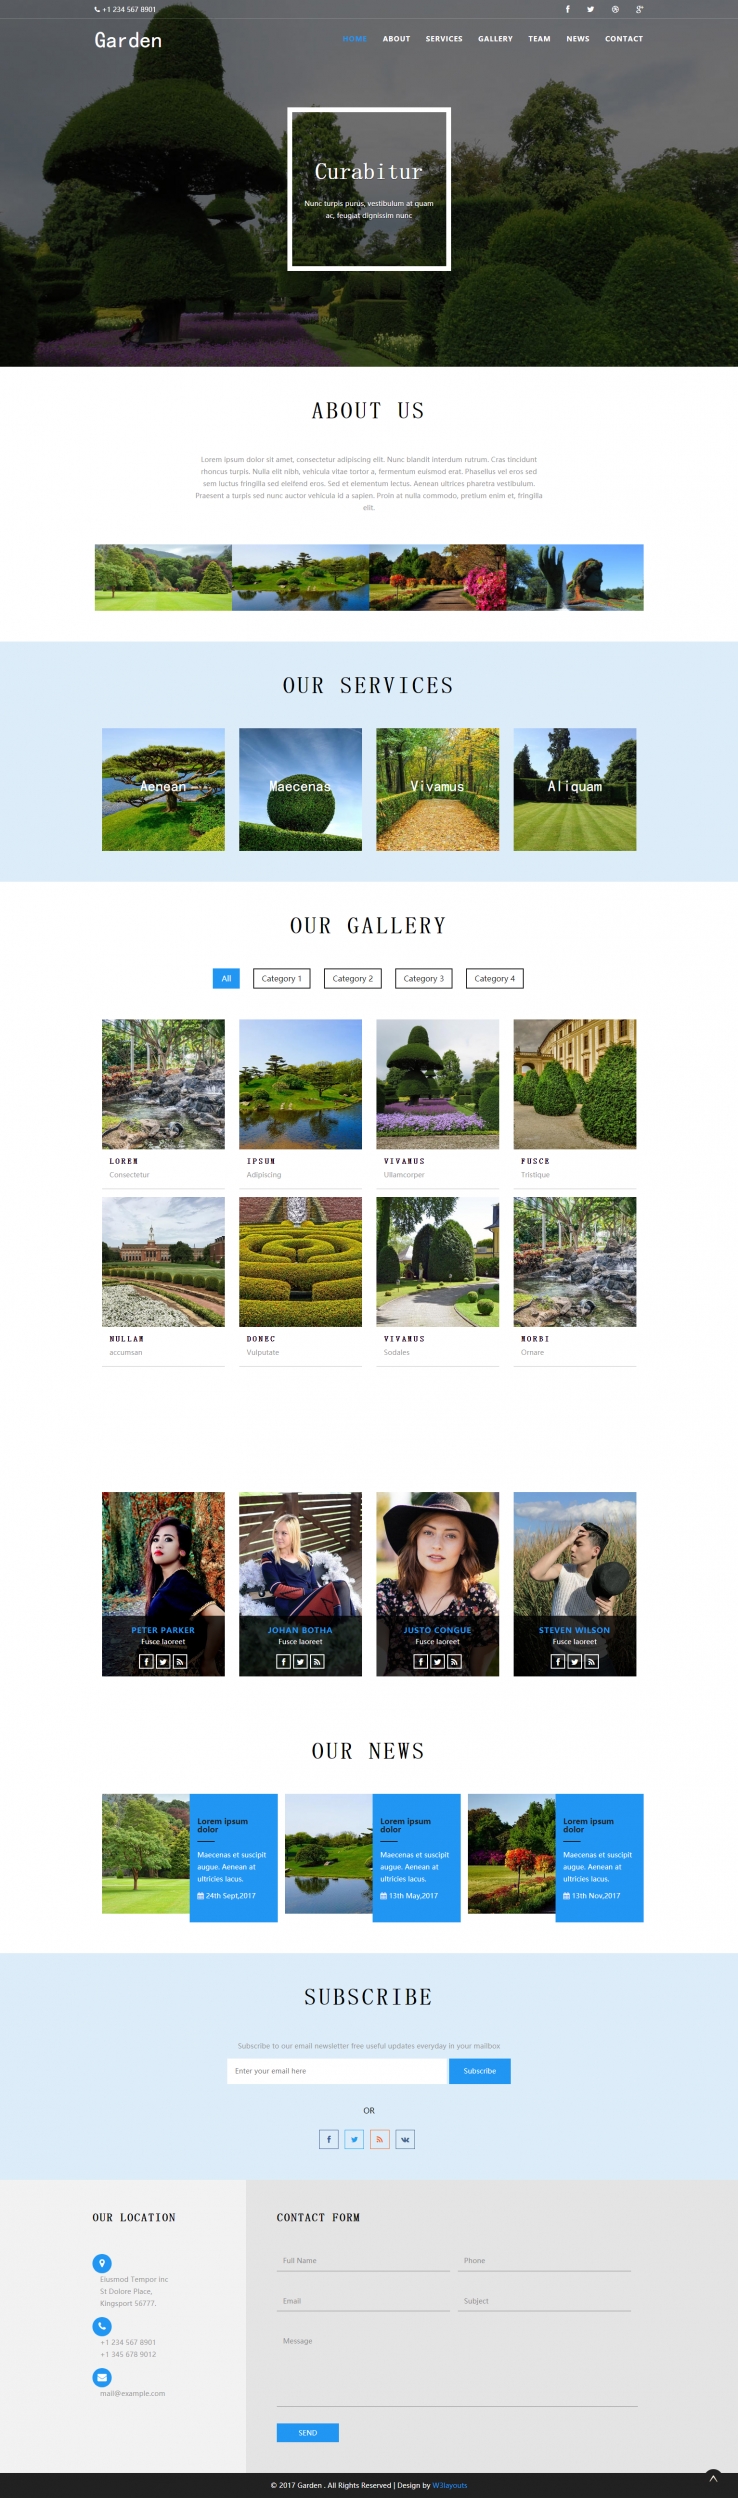 蓝色简洁风格的园艺景观设计源码下载